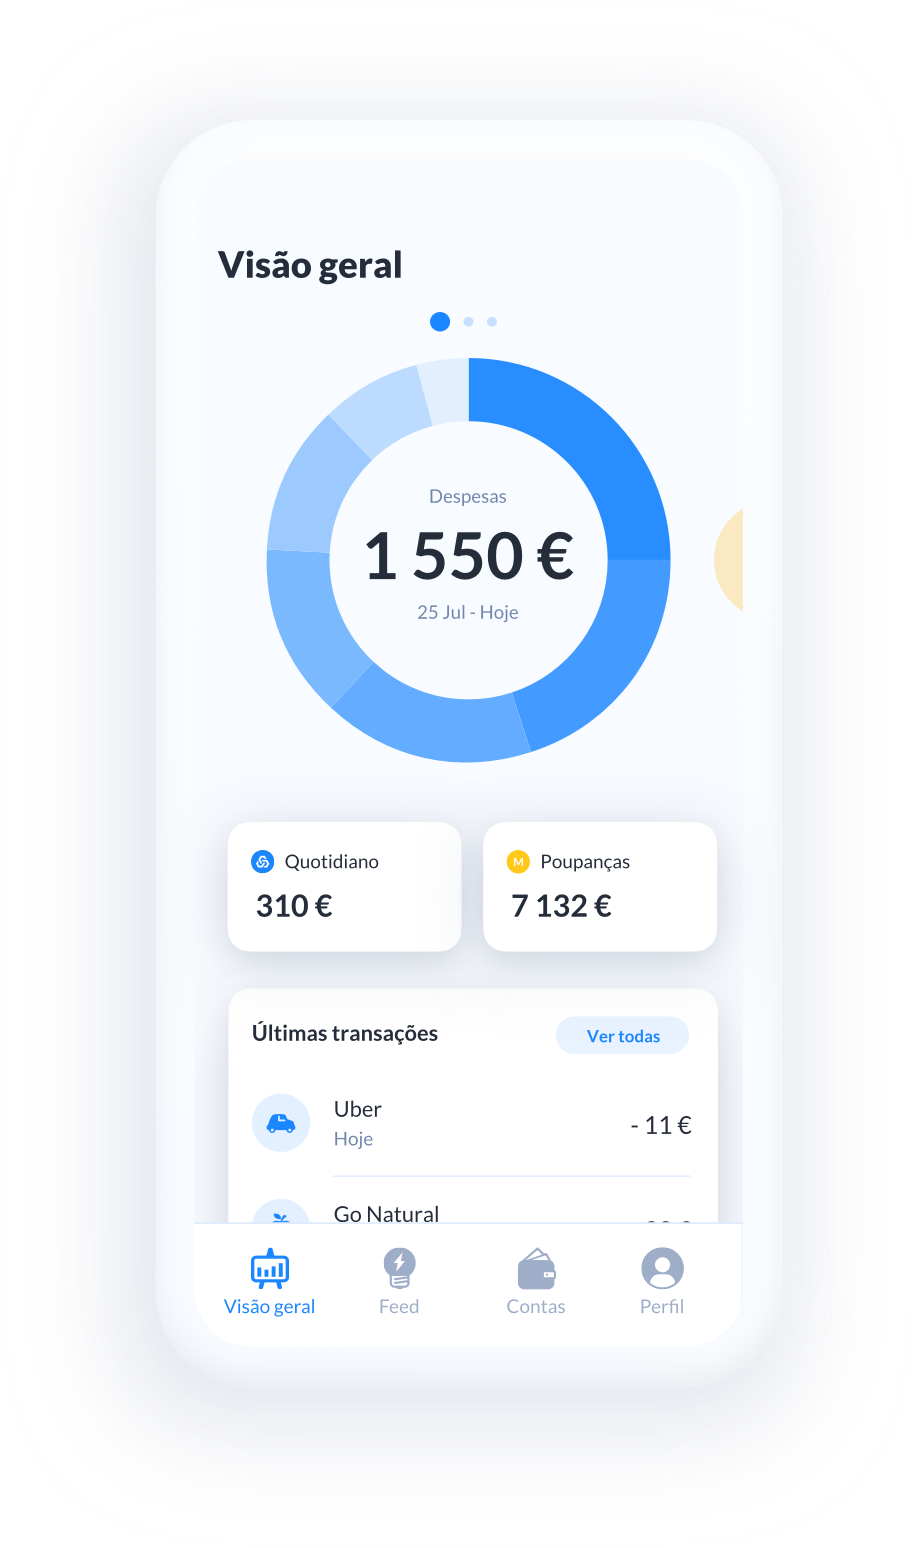 Caixa lança primeira app de open banking em Portugal - Meios & Publicidade